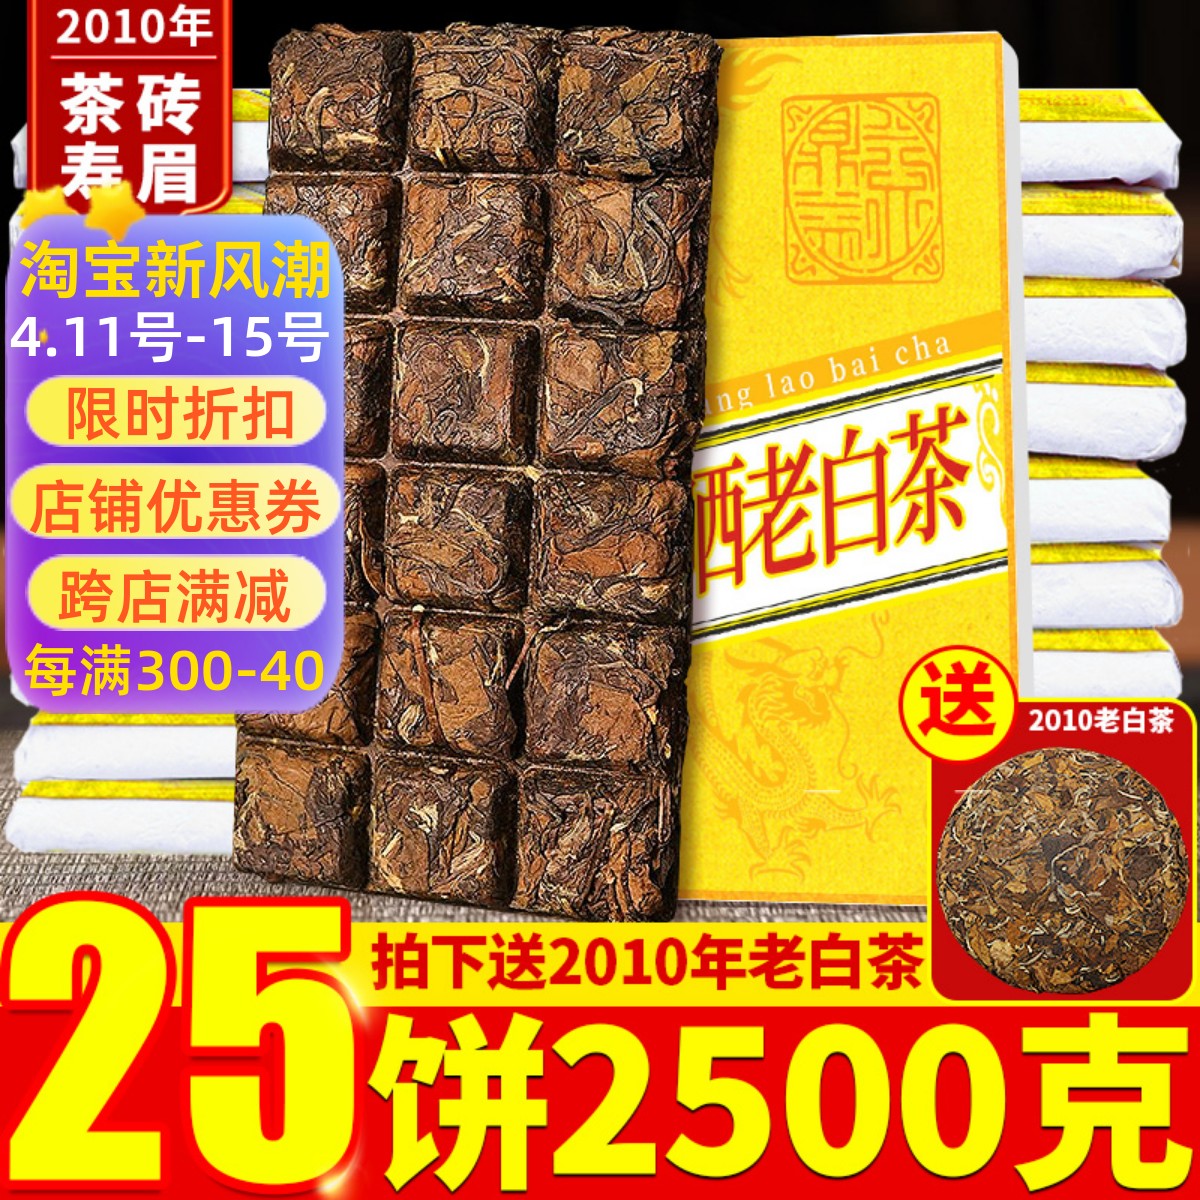 25片2010福鼎荒野十年方片老白茶